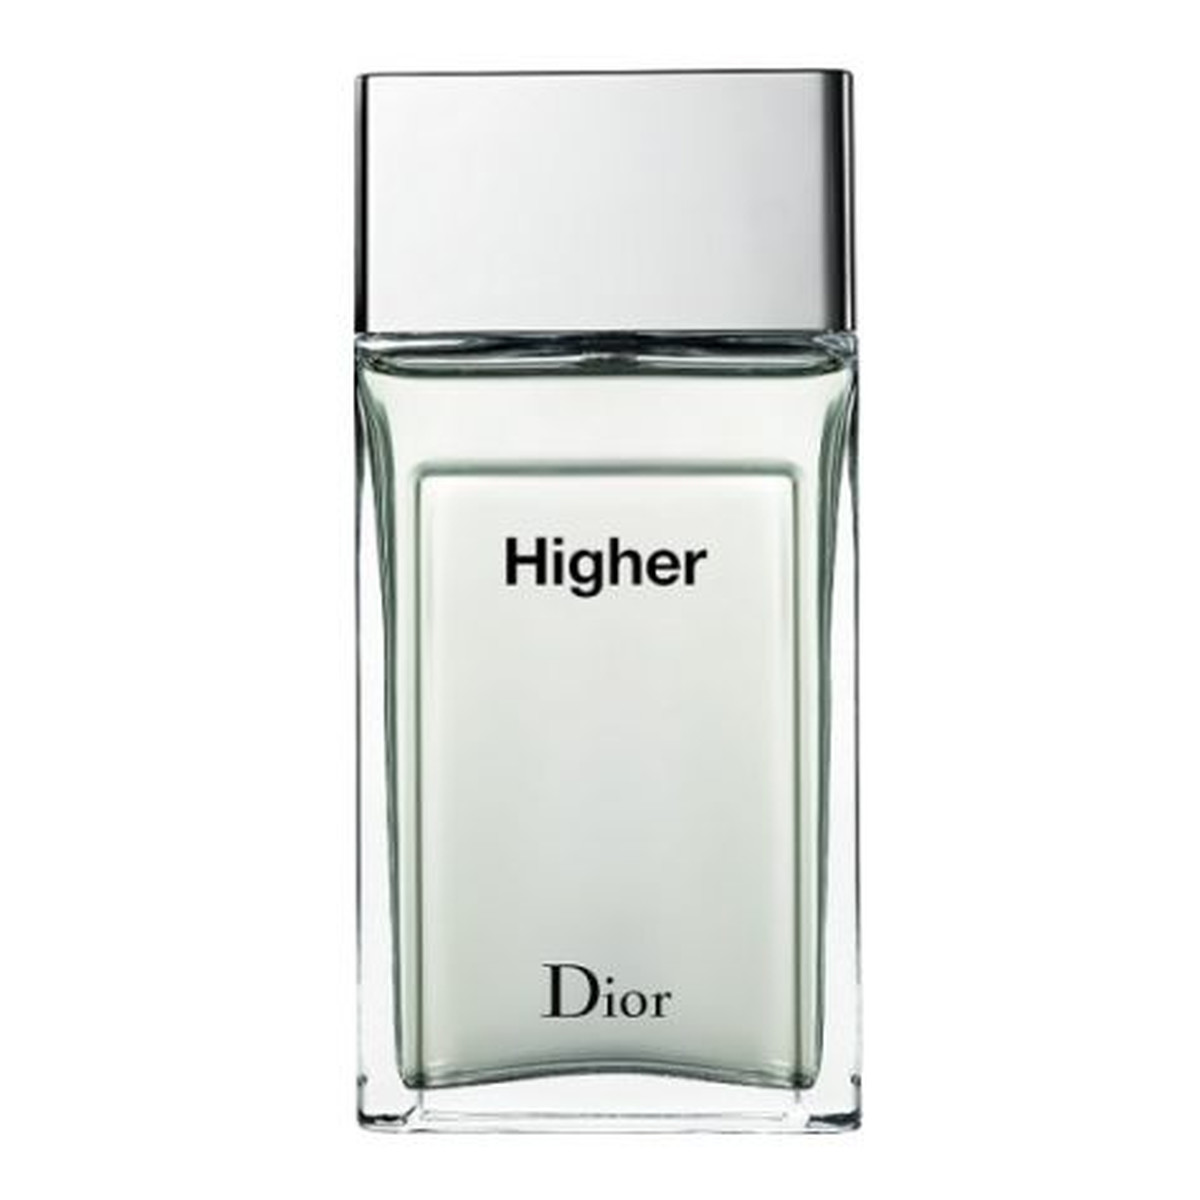 Dior Higher Woda toaletowa spray 50ml